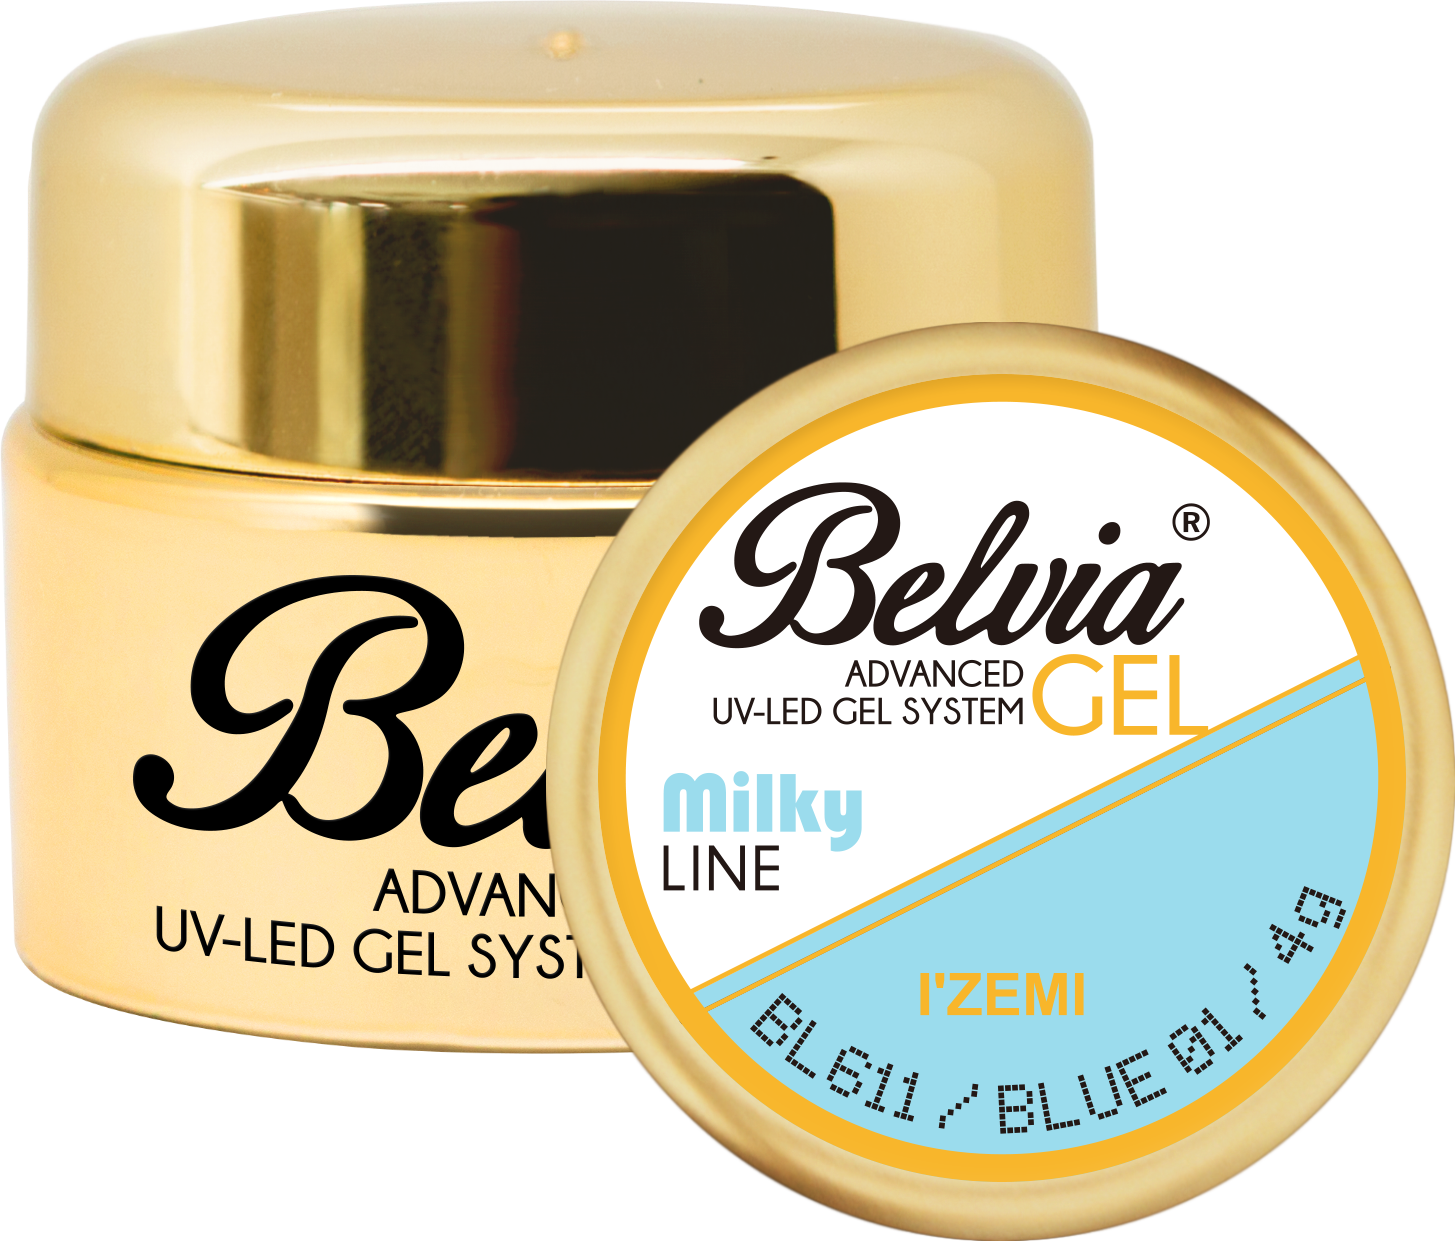 Belvia Milky Line gel - BLUE